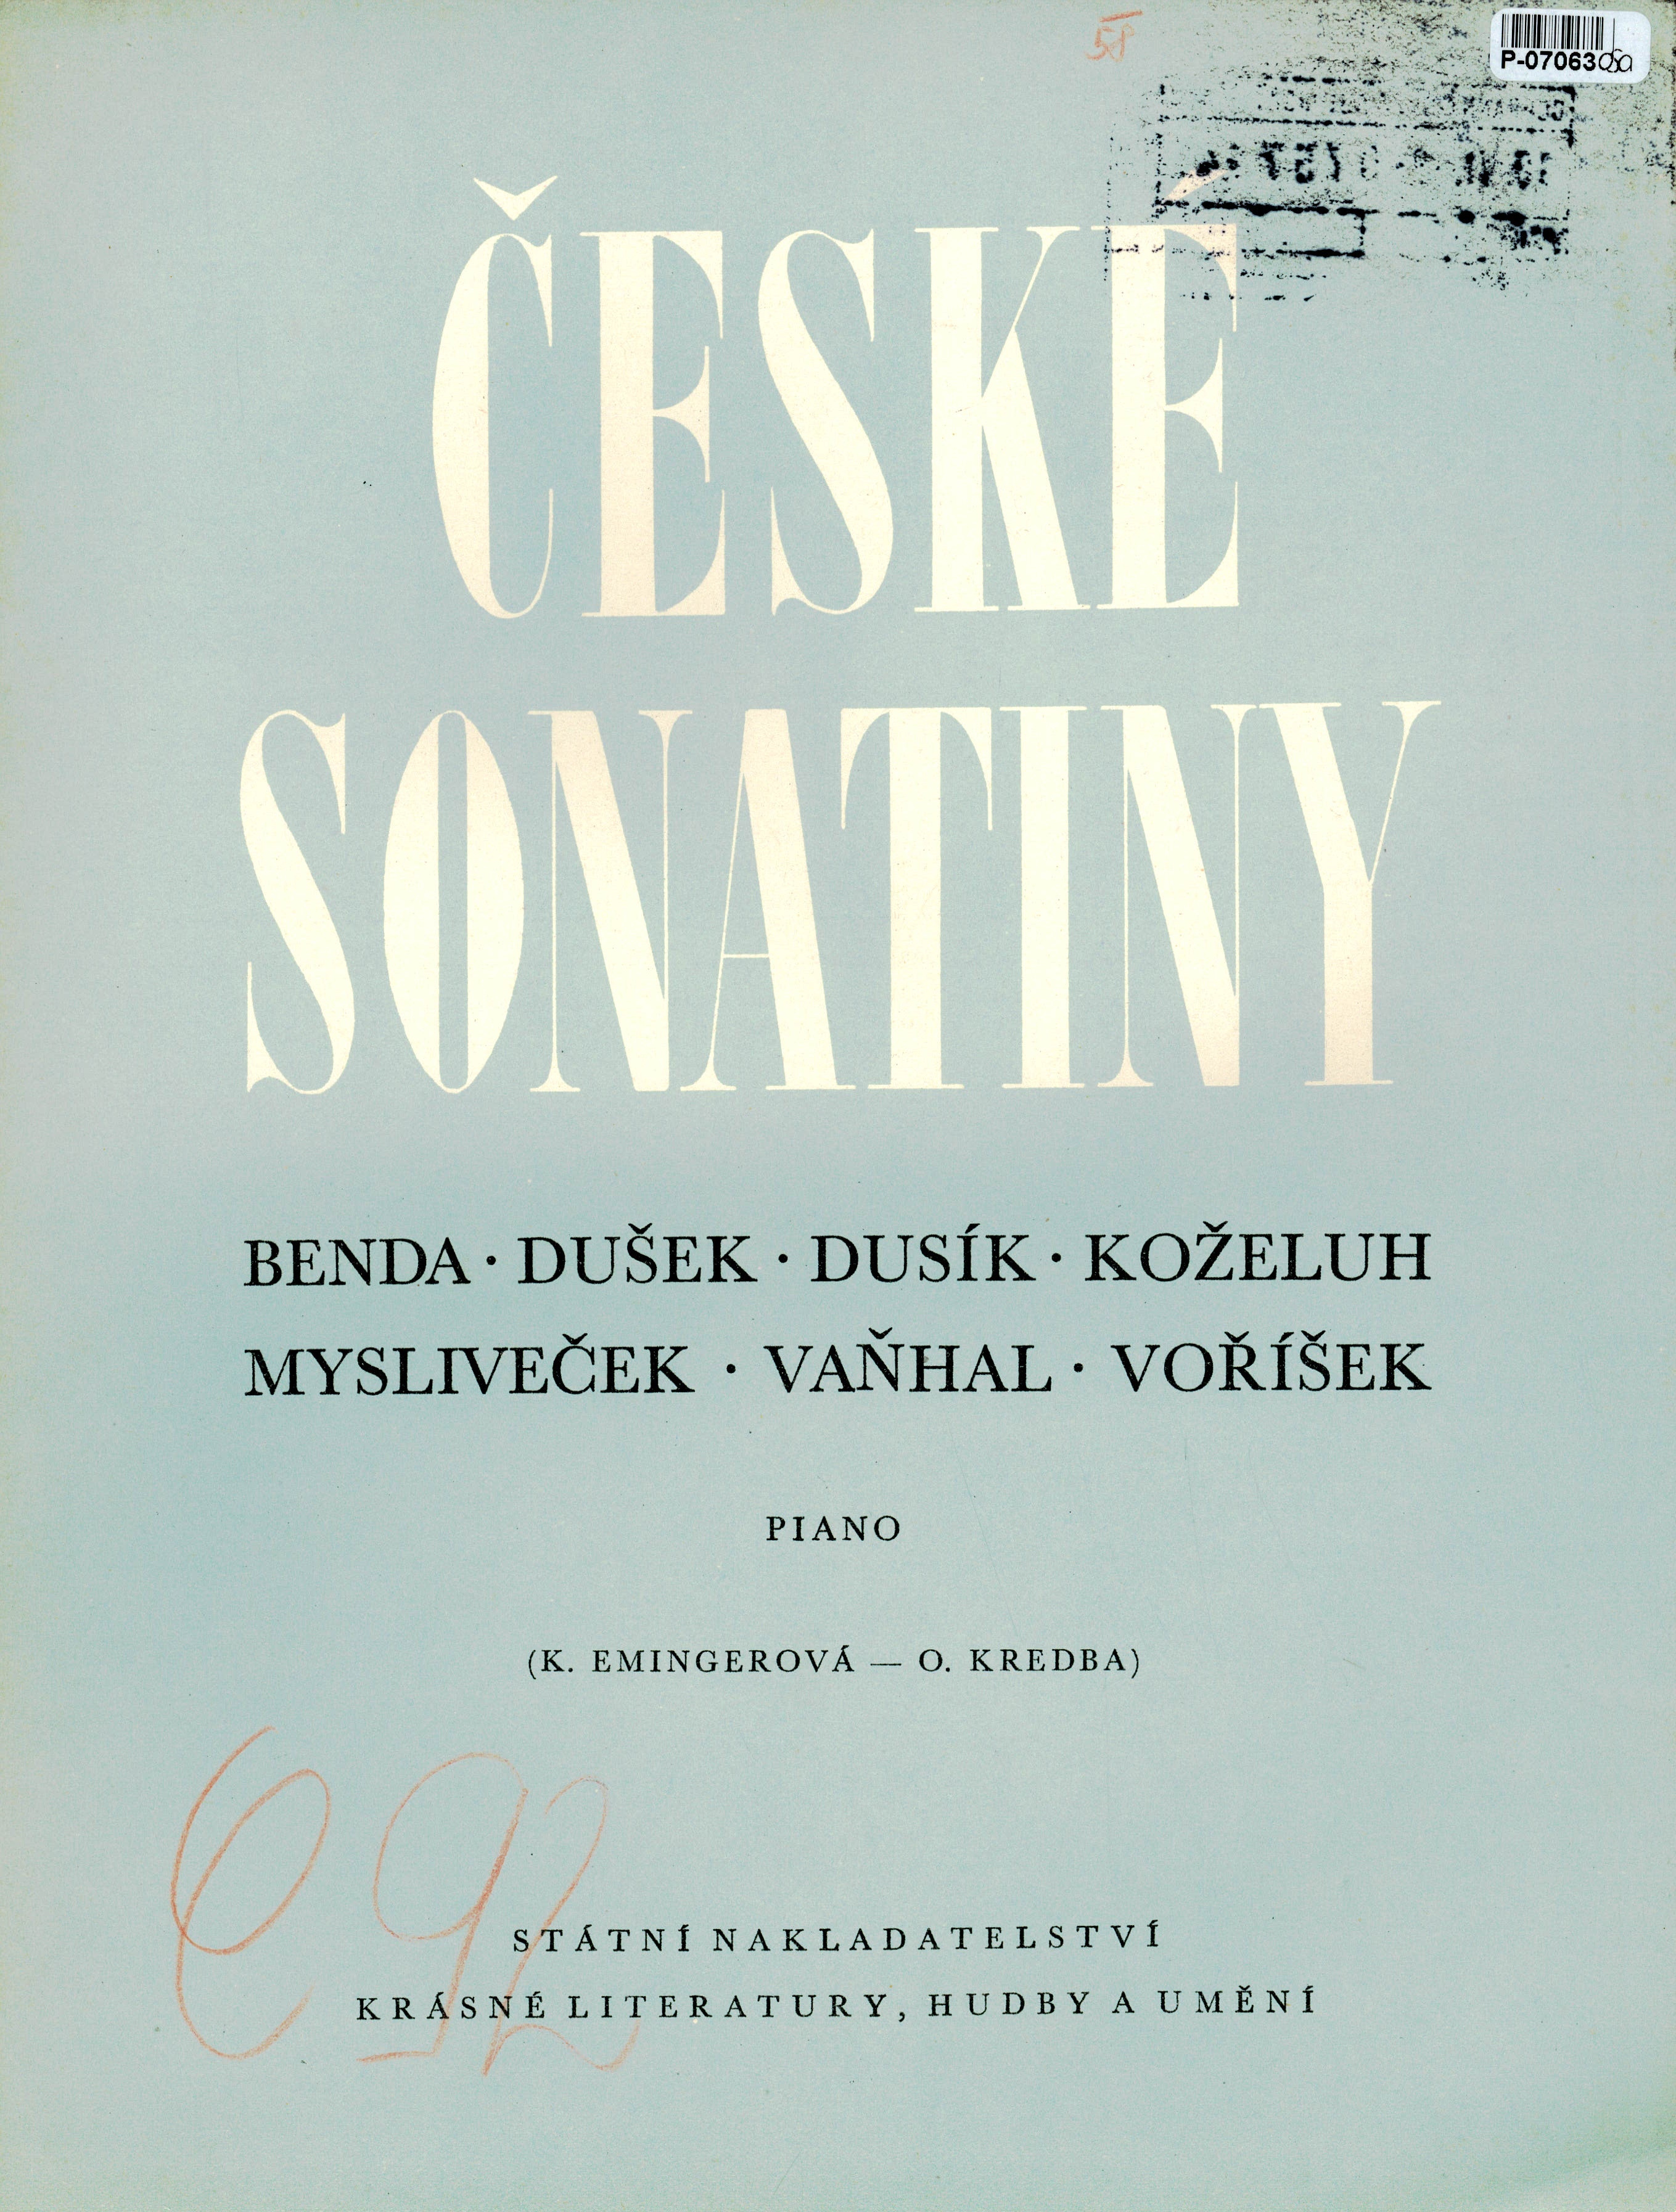 České sonatiny